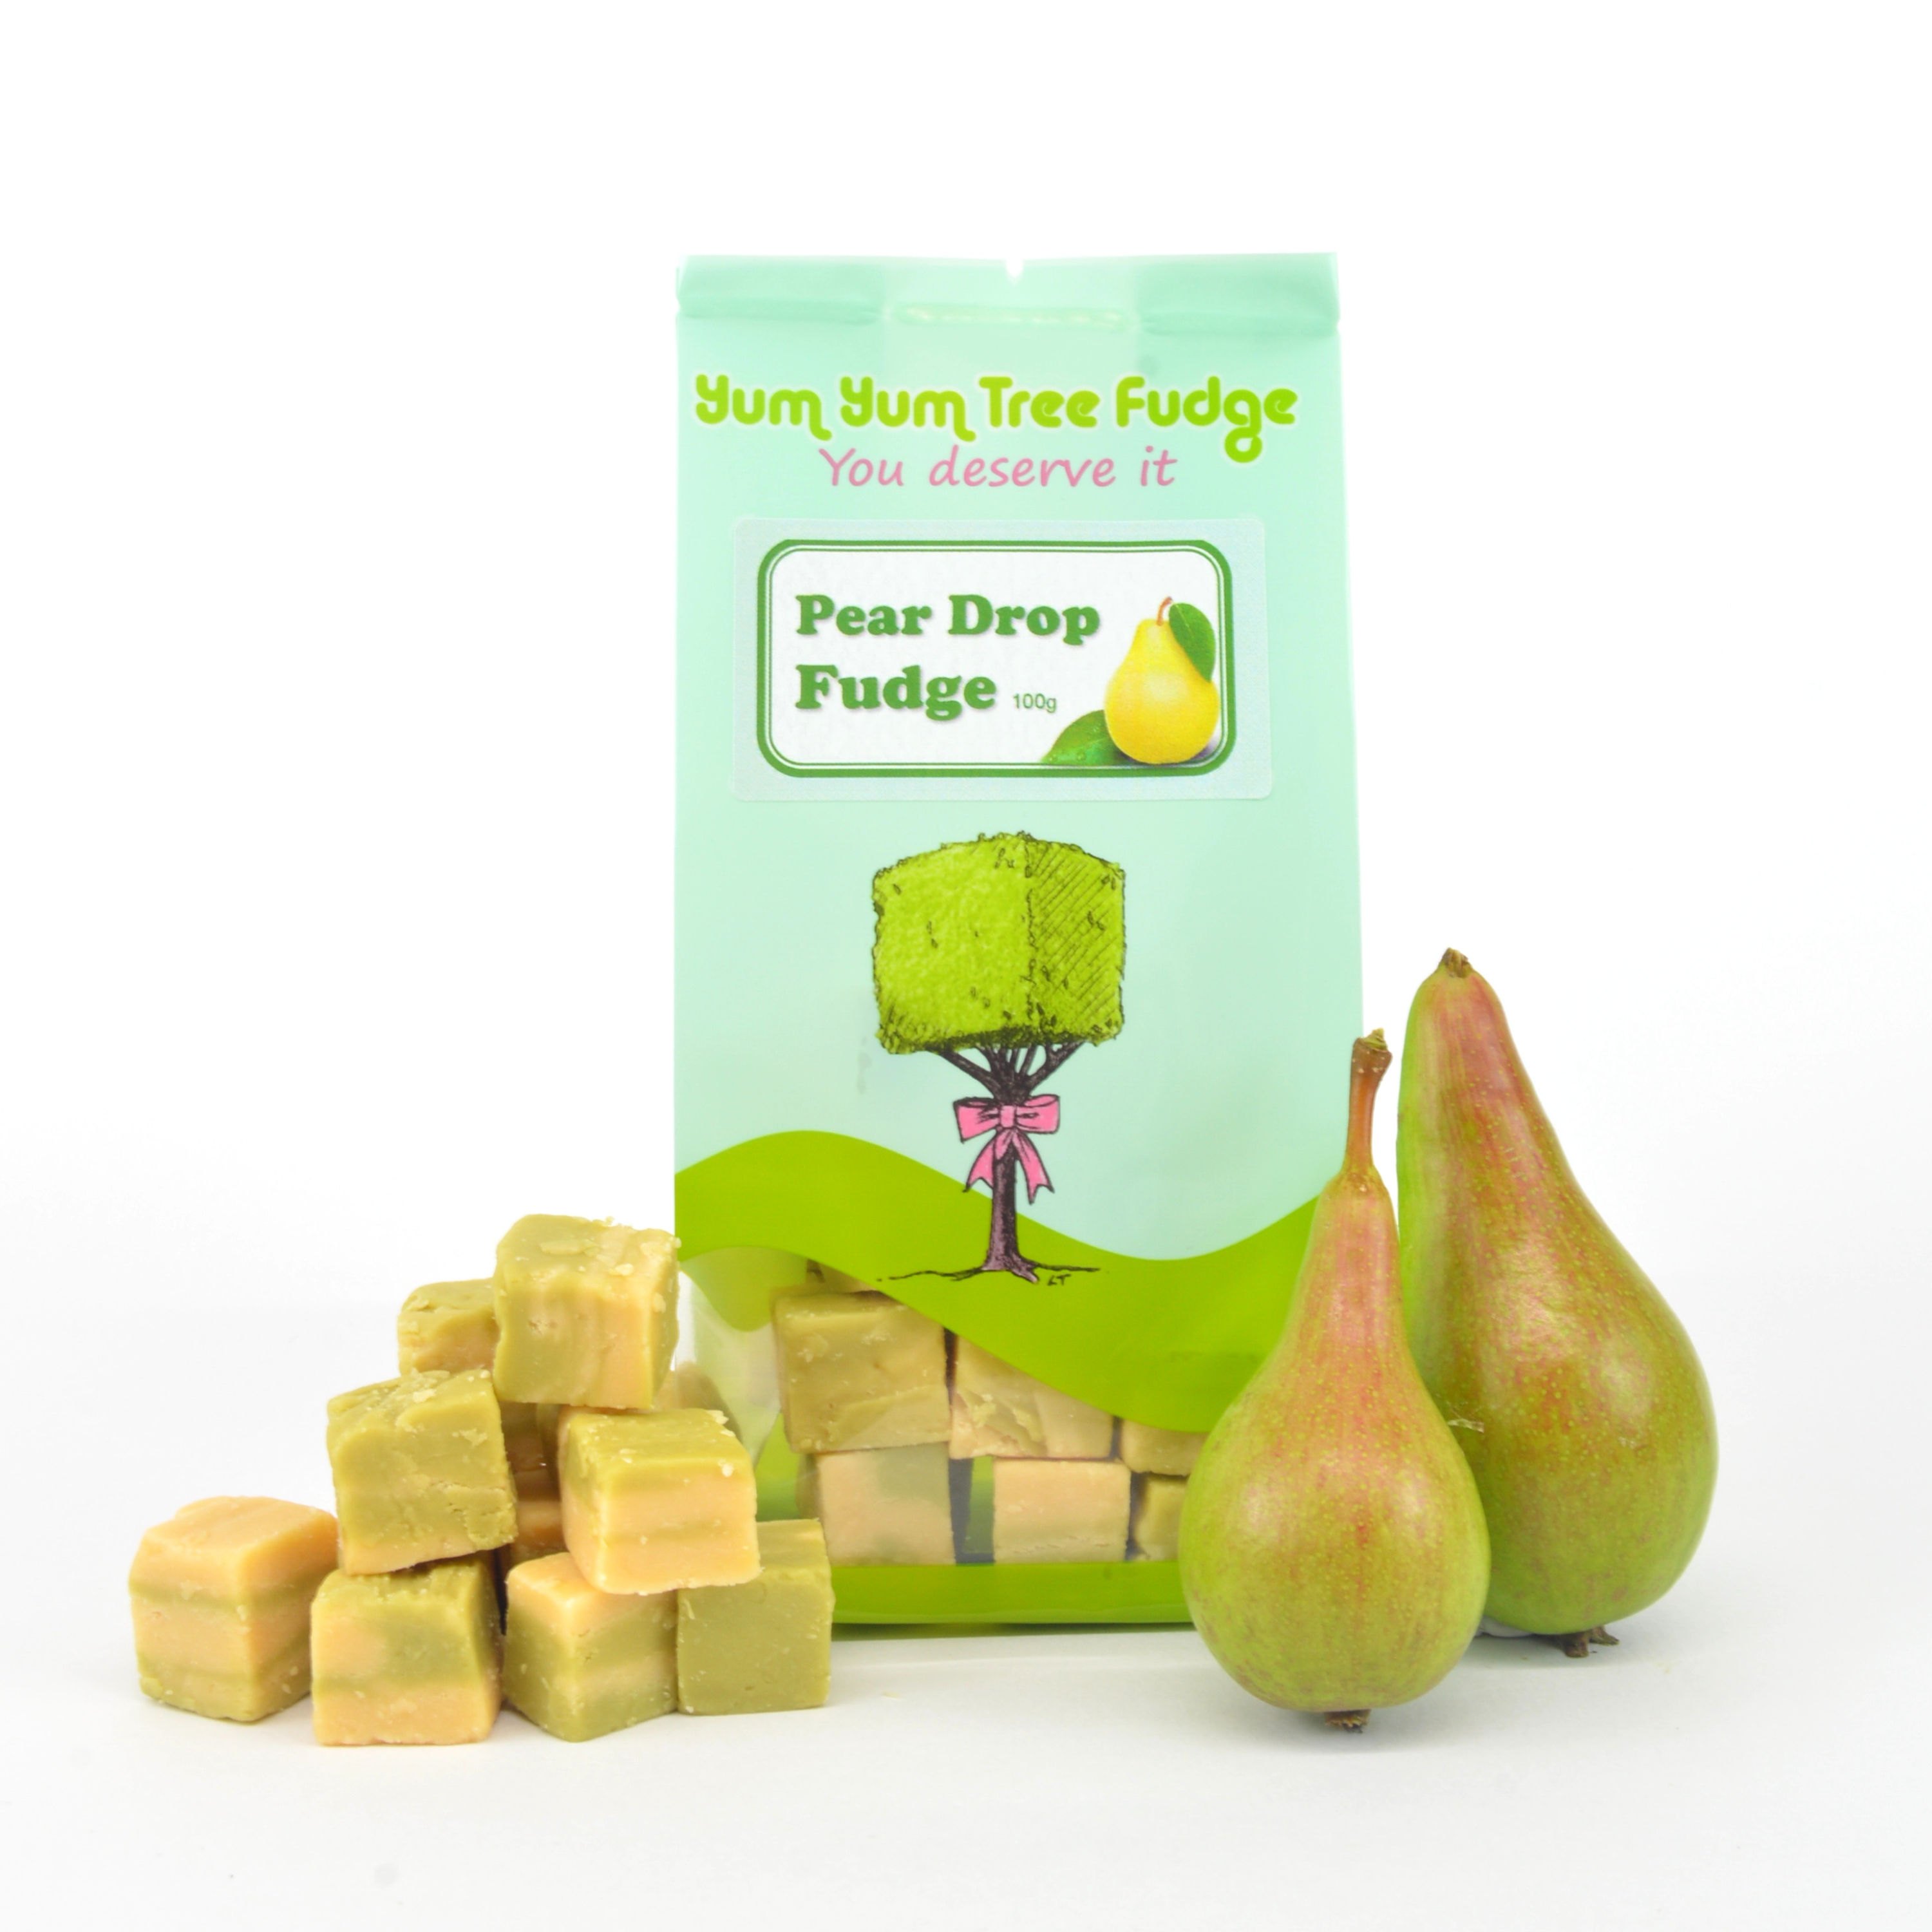 Pear Drop Fudge By Yum Yum Tree Fudge